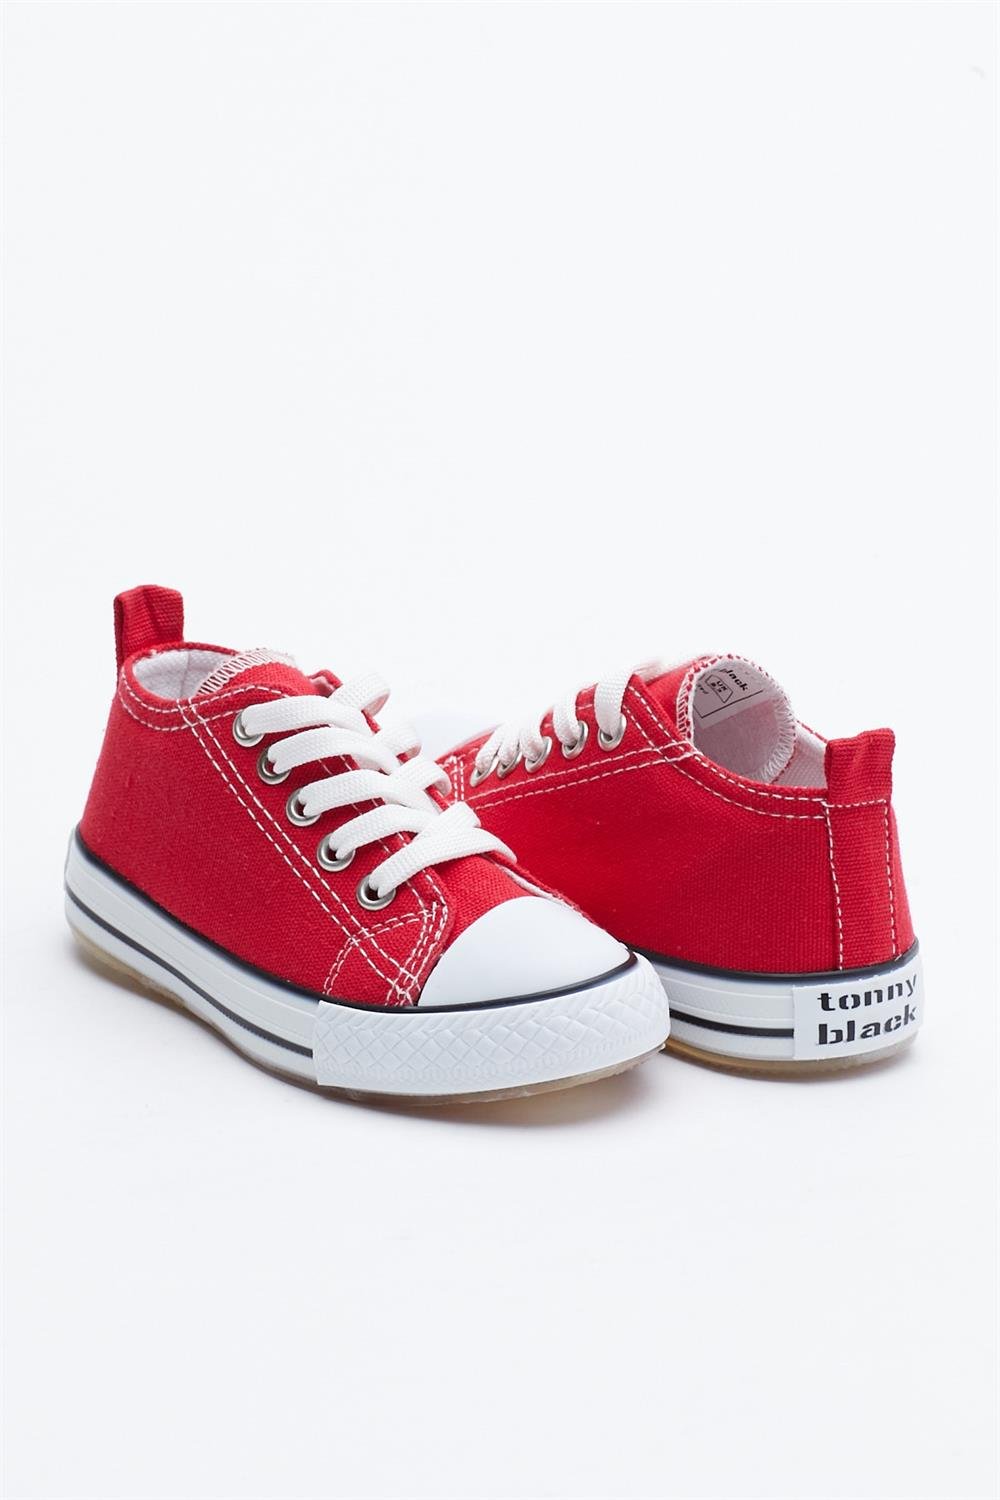 Çocuk Unisex Kırmızı Işıklı Spor Ayakkabı Tb998 | Tonny Black